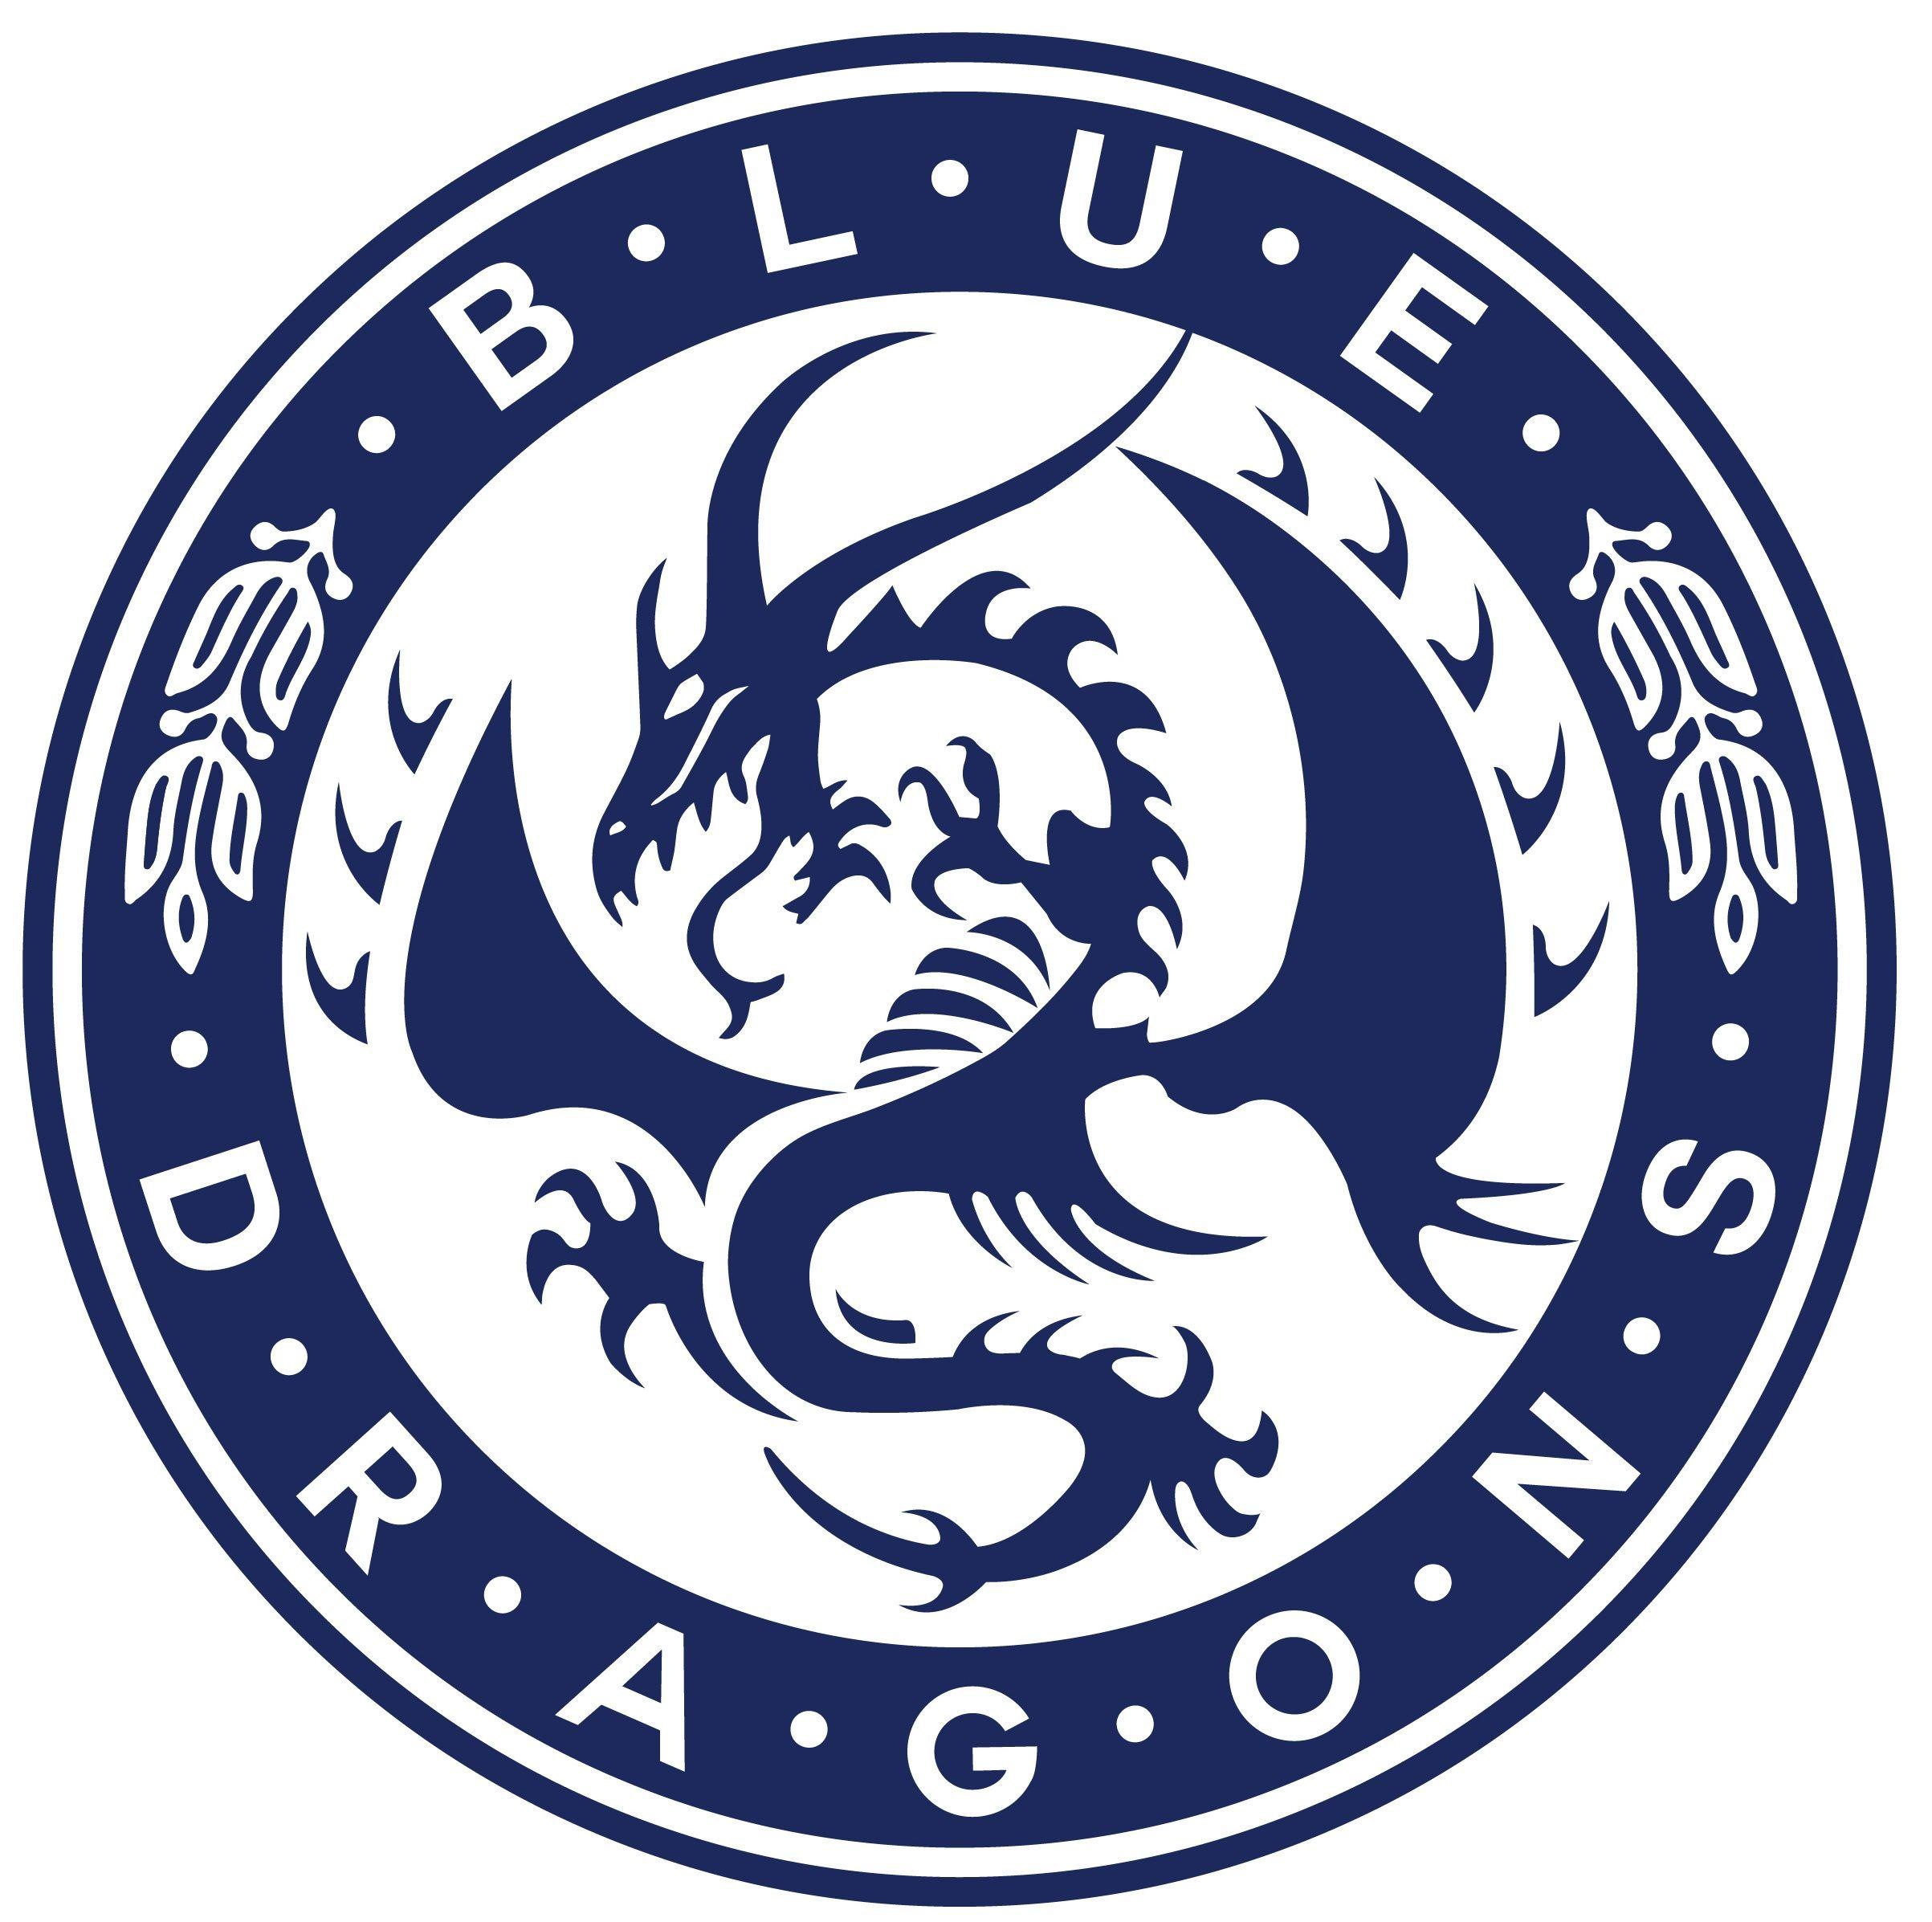 blue dragon logo maker for youtube